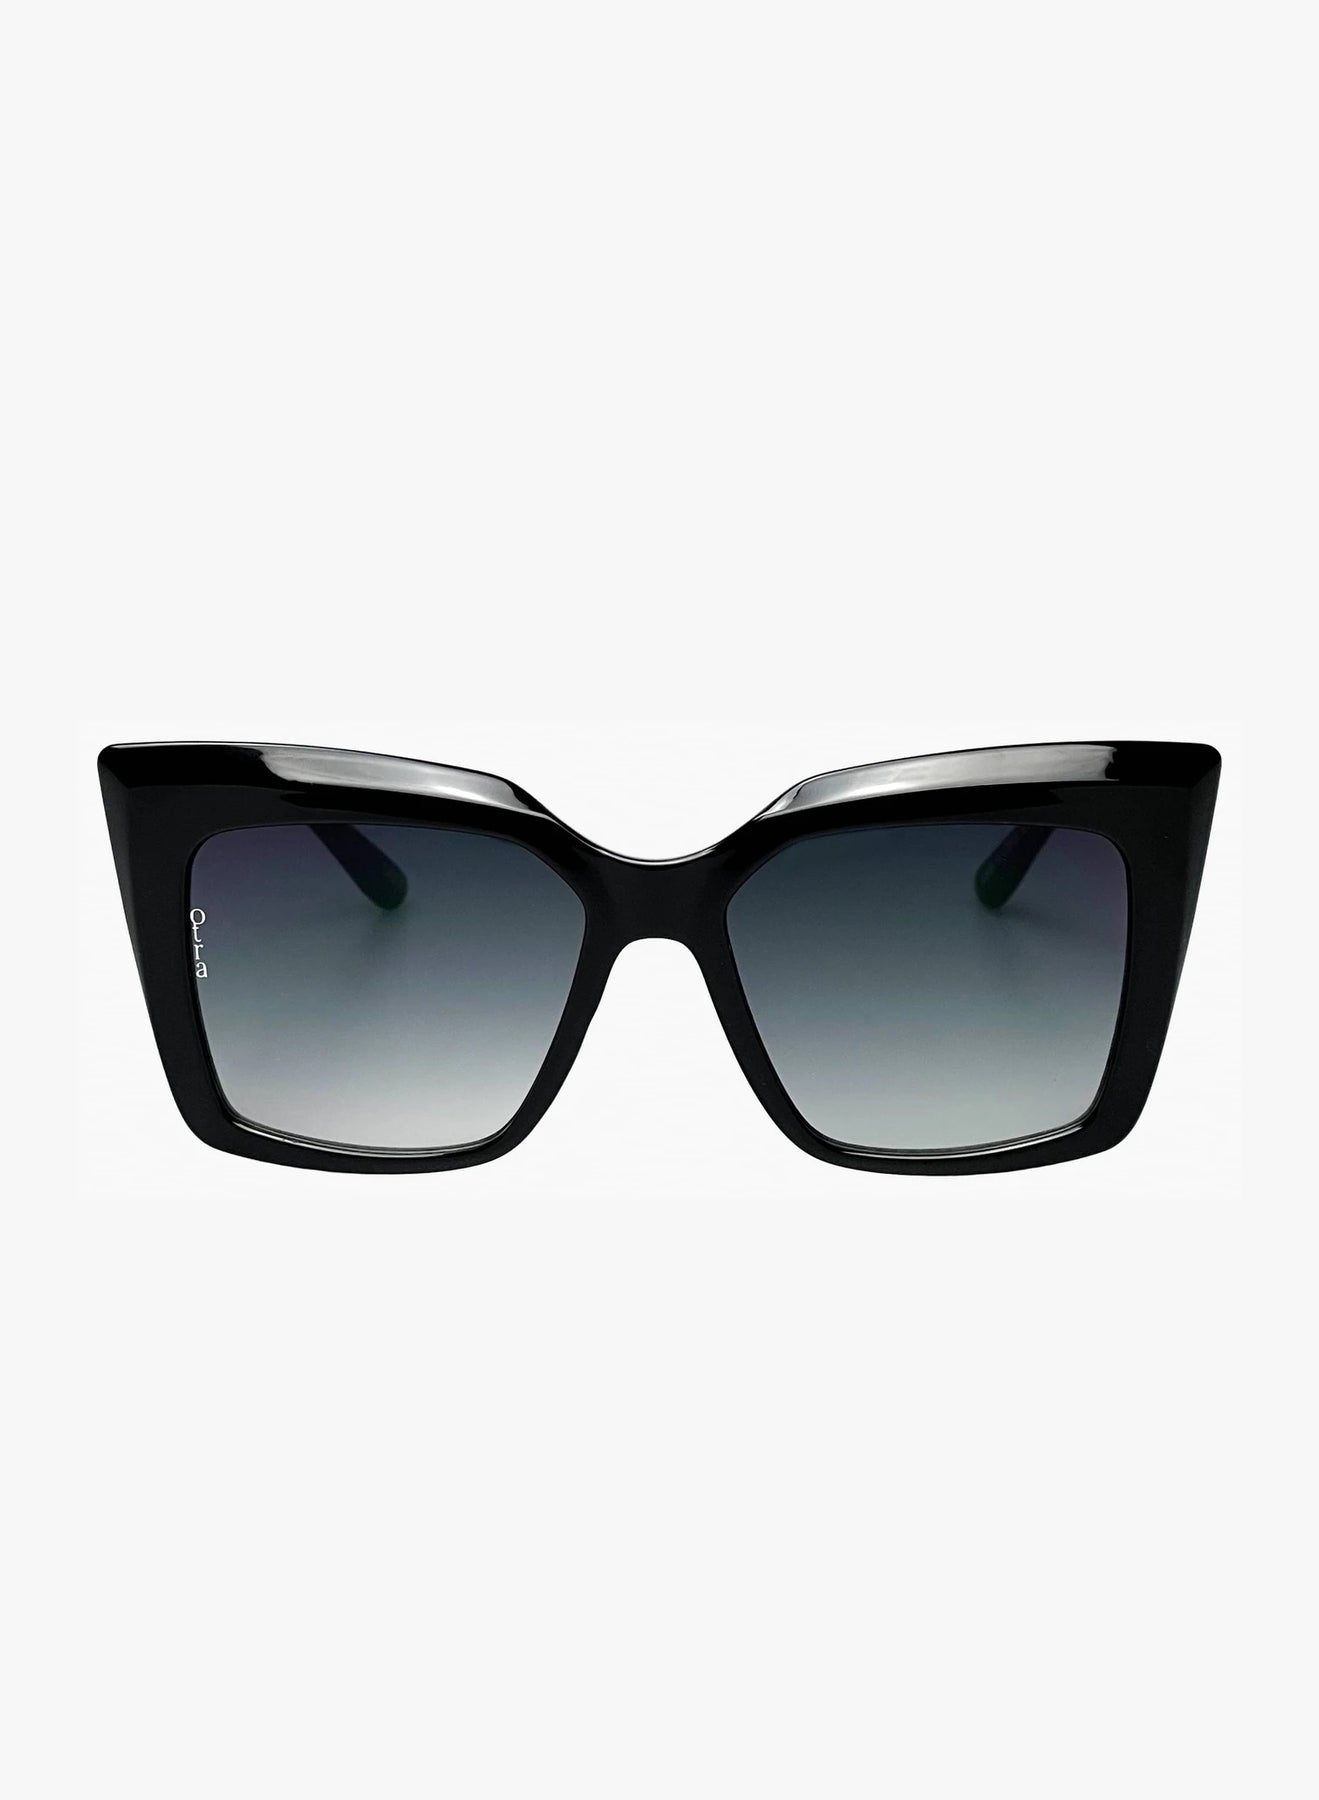 Otra Eyewear - Sierra Sunglasses in Black | Blond Genius